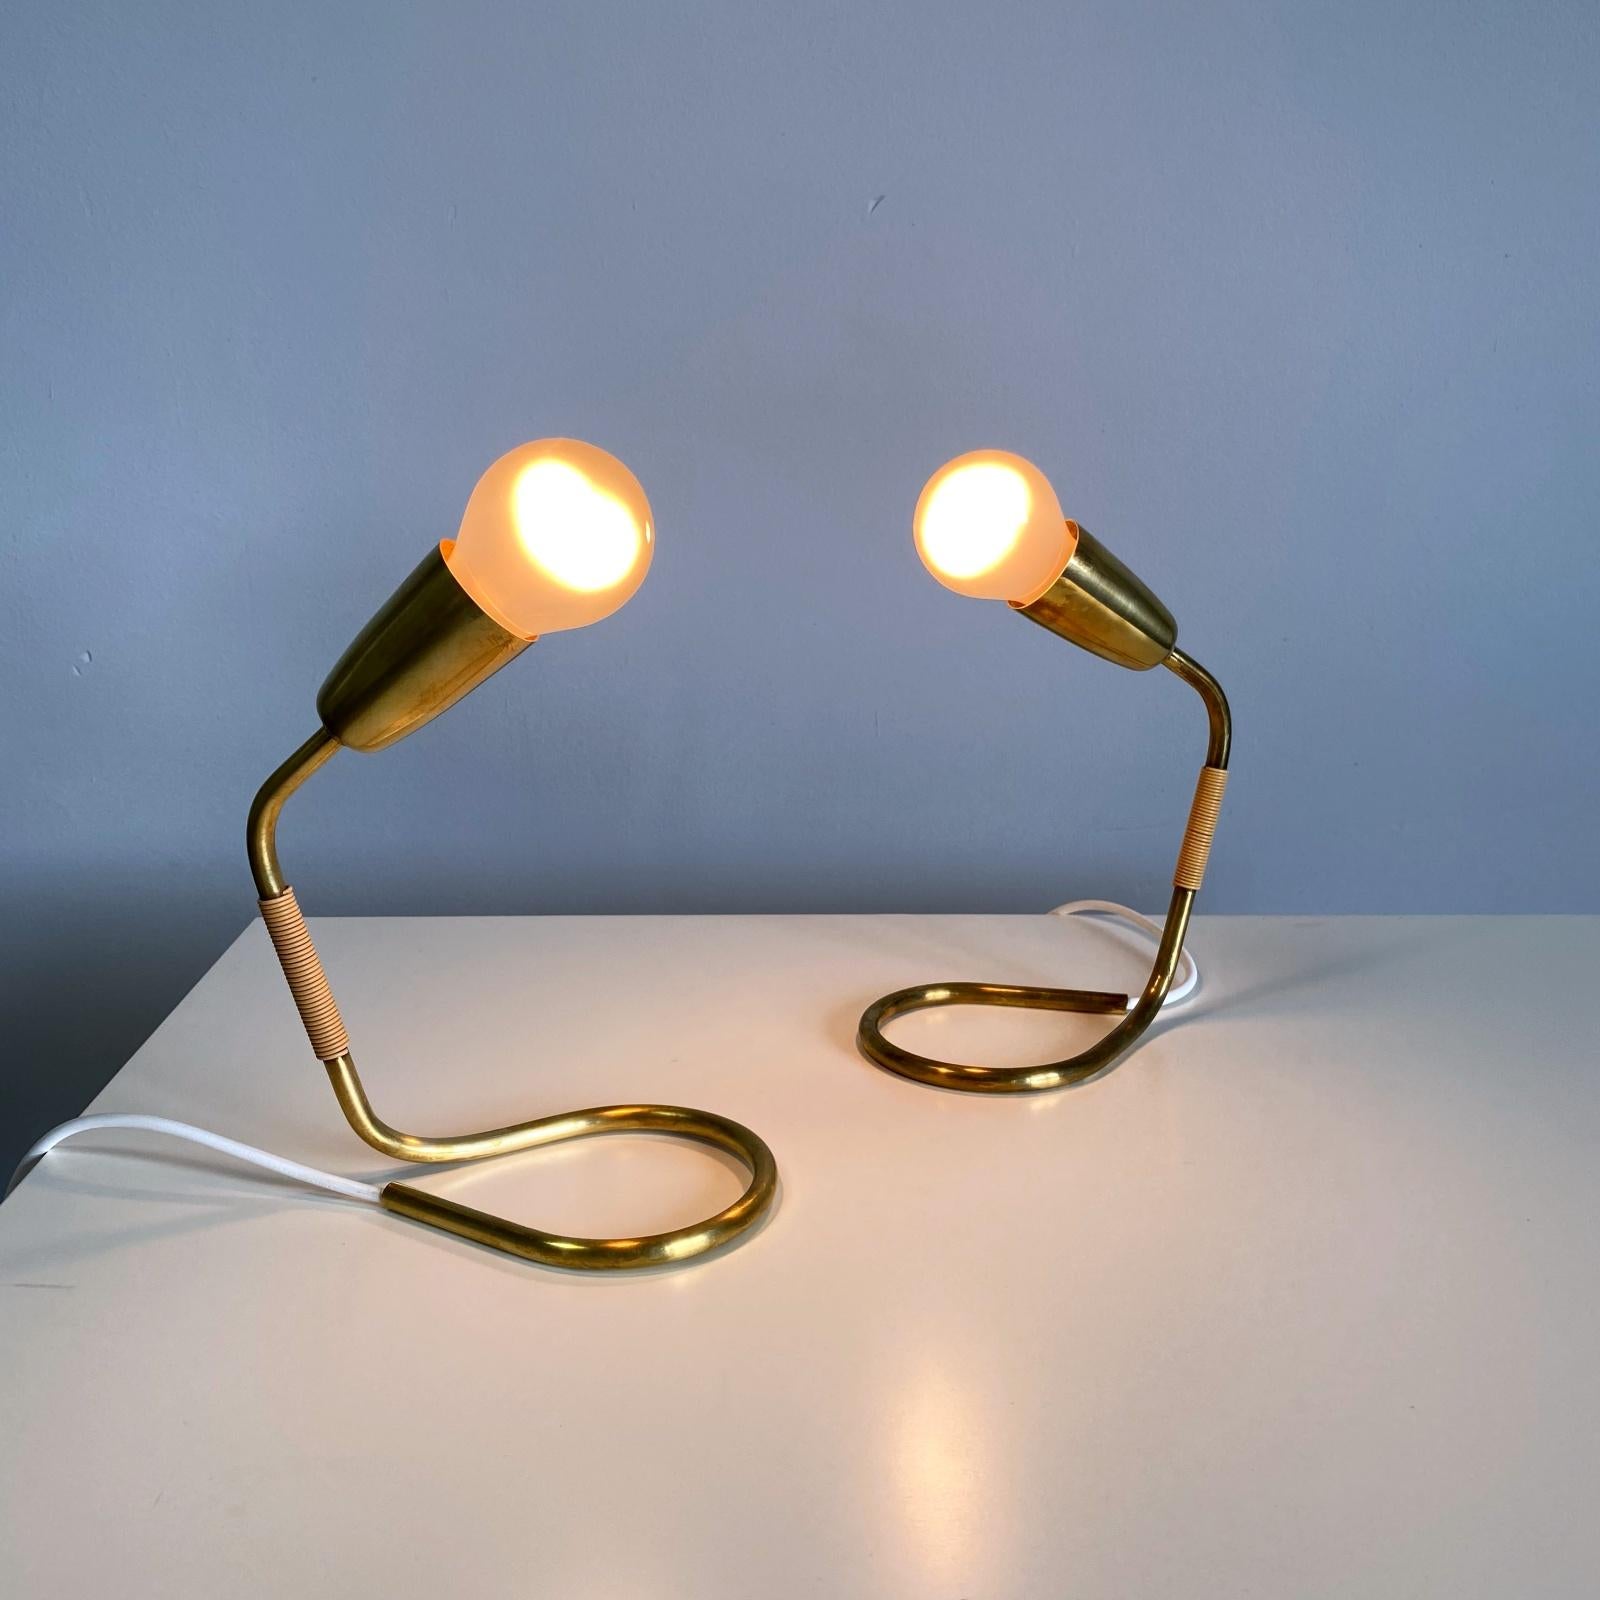 Zwei elegante Nachttisch- oder Tischlampen aus poliertem Messing von Rupert Nikoll. Hergestellt aus gebogenem Messingrohr.
Voll funktionsfähiger, neu verkabelter und geprüfter Zustand mit schöner Patina. Eine Edison E27-Fassung. Die Lampen